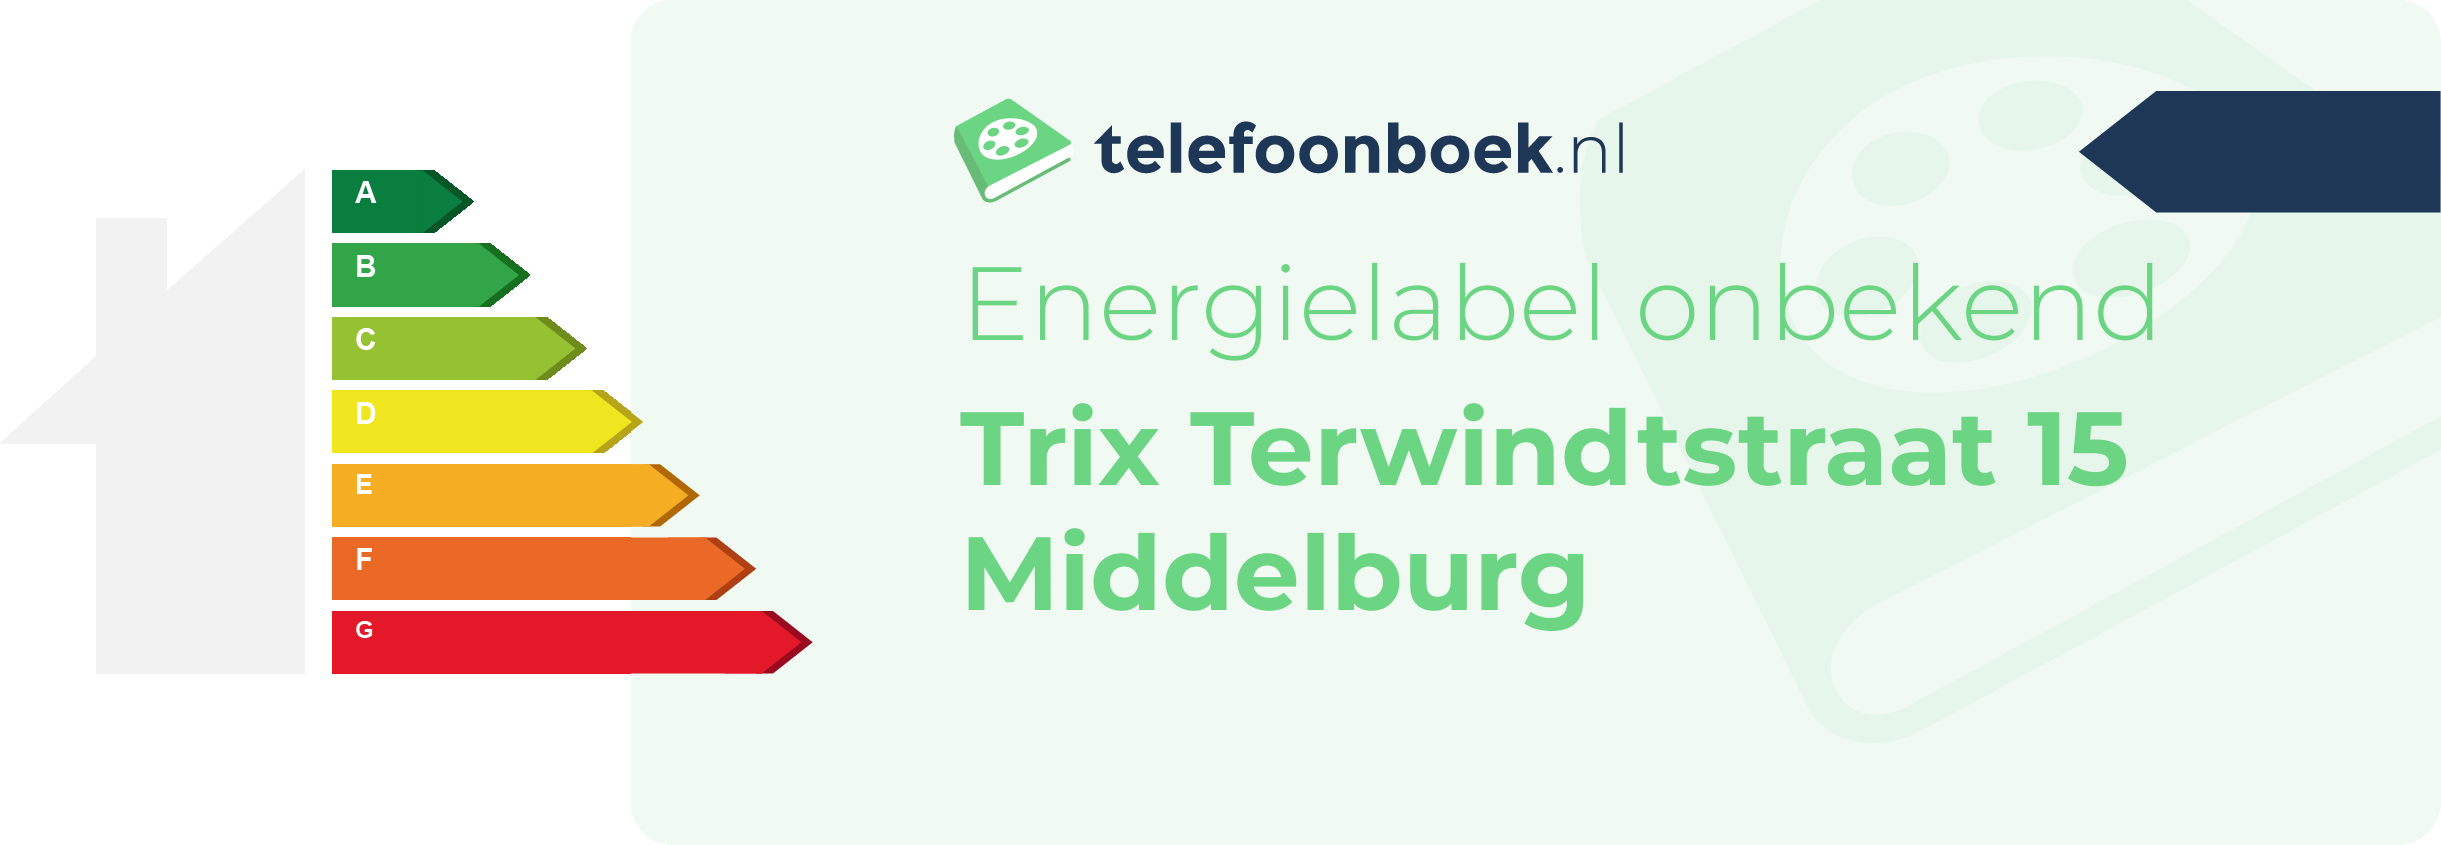 Energielabel Trix Terwindtstraat 15 Middelburg